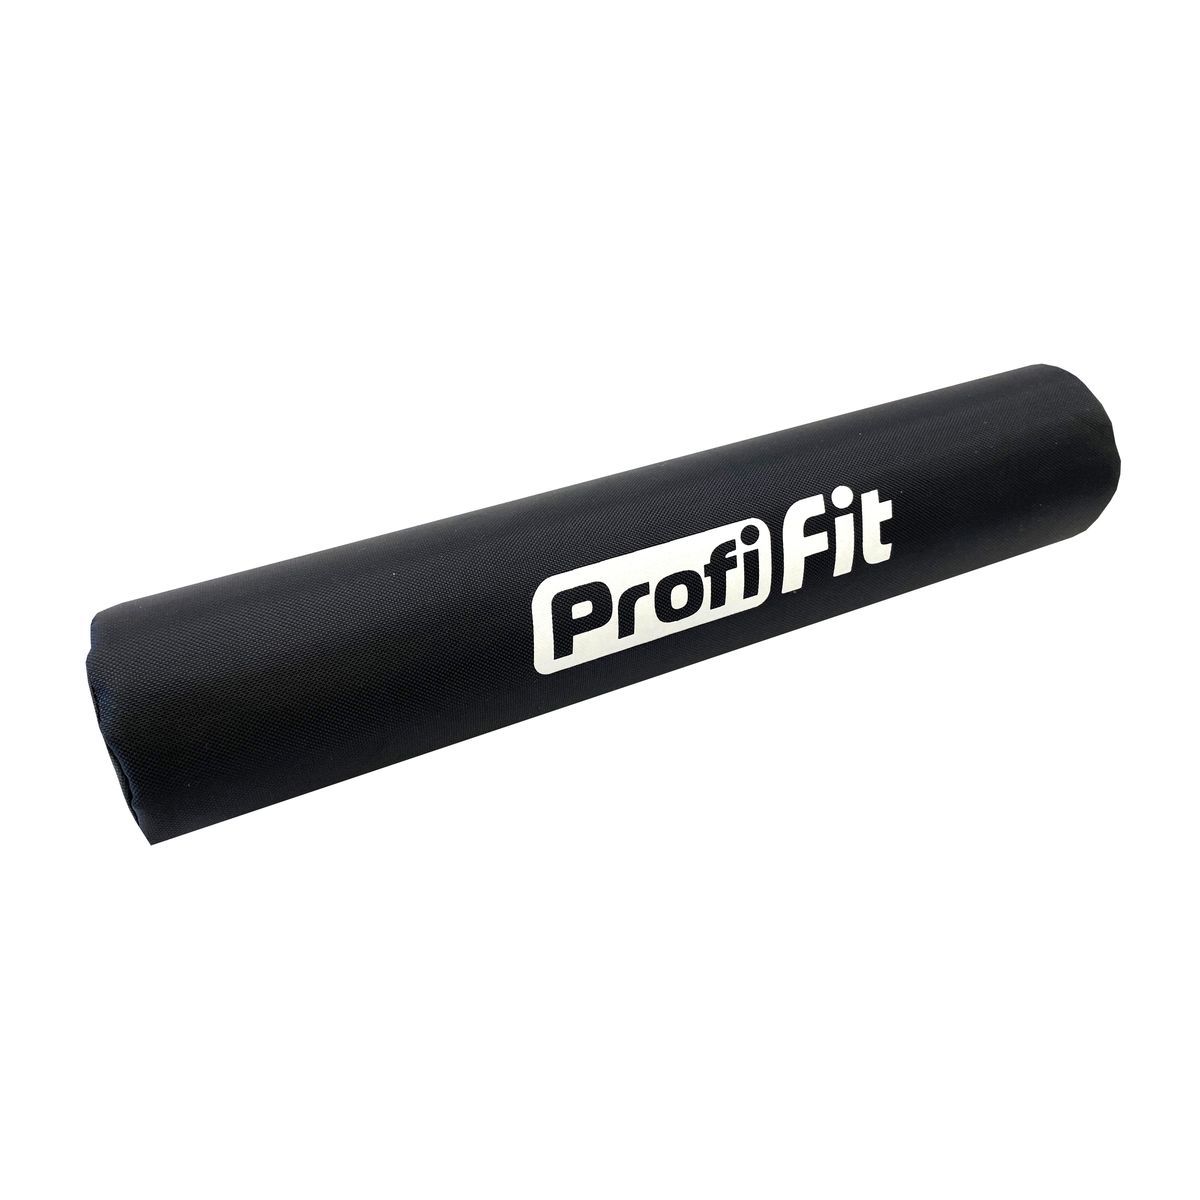 Смягчающая накладка на гриф, диаметр 8 см, длина 38 см с логотипом PROFI-FIT-RT-025 - в интернет магазине Acrobat24.ru 